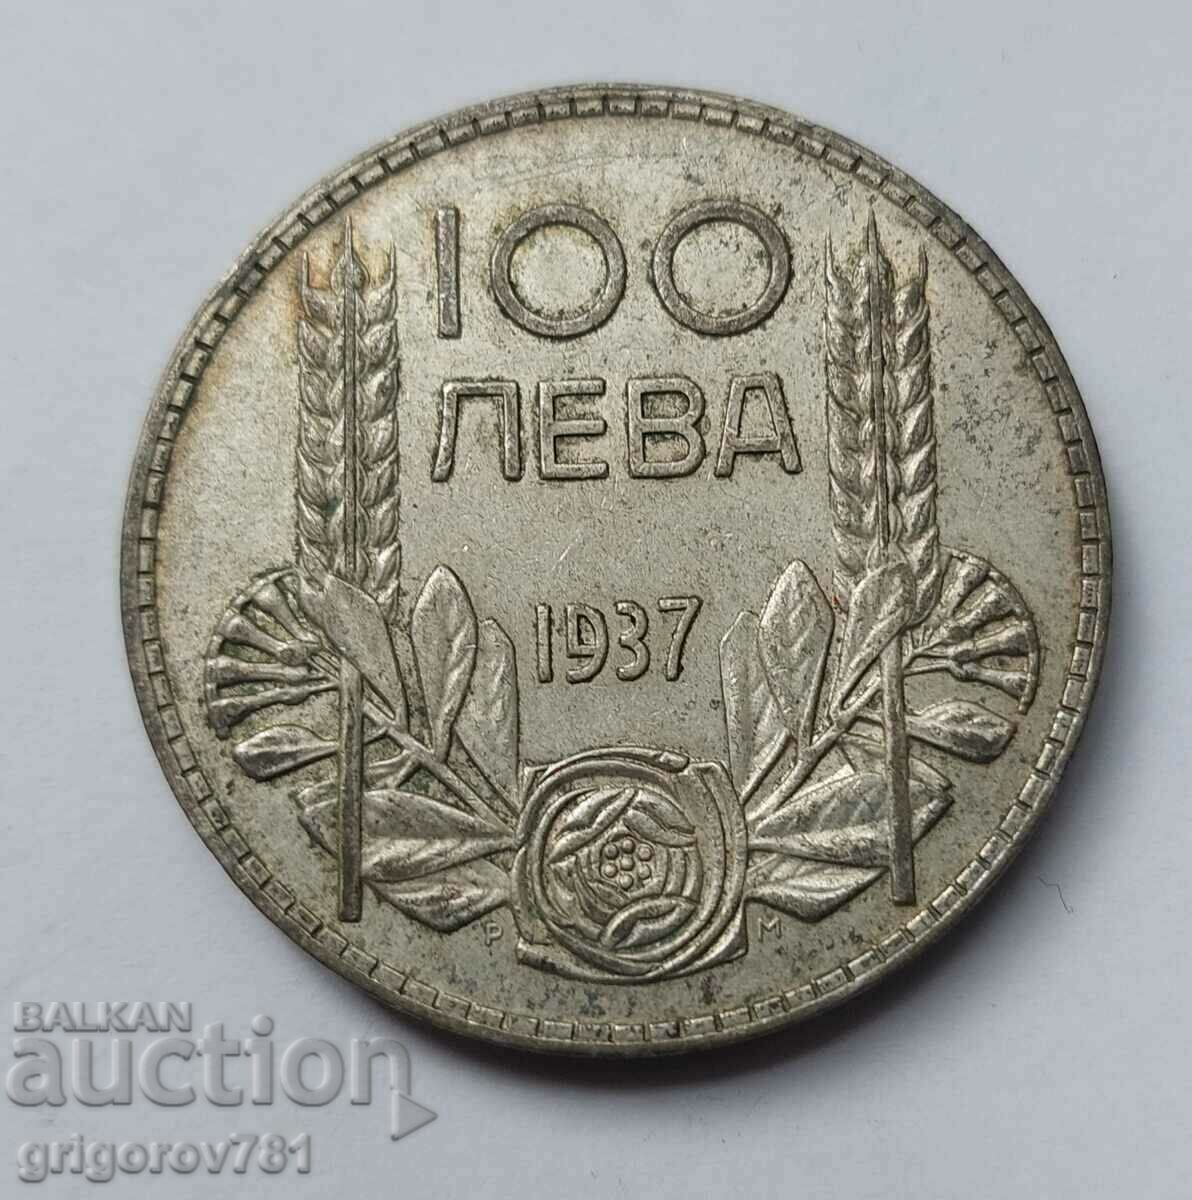 Ασήμι 100 λέβα Βουλγαρία 1937 - ασημένιο νόμισμα #8